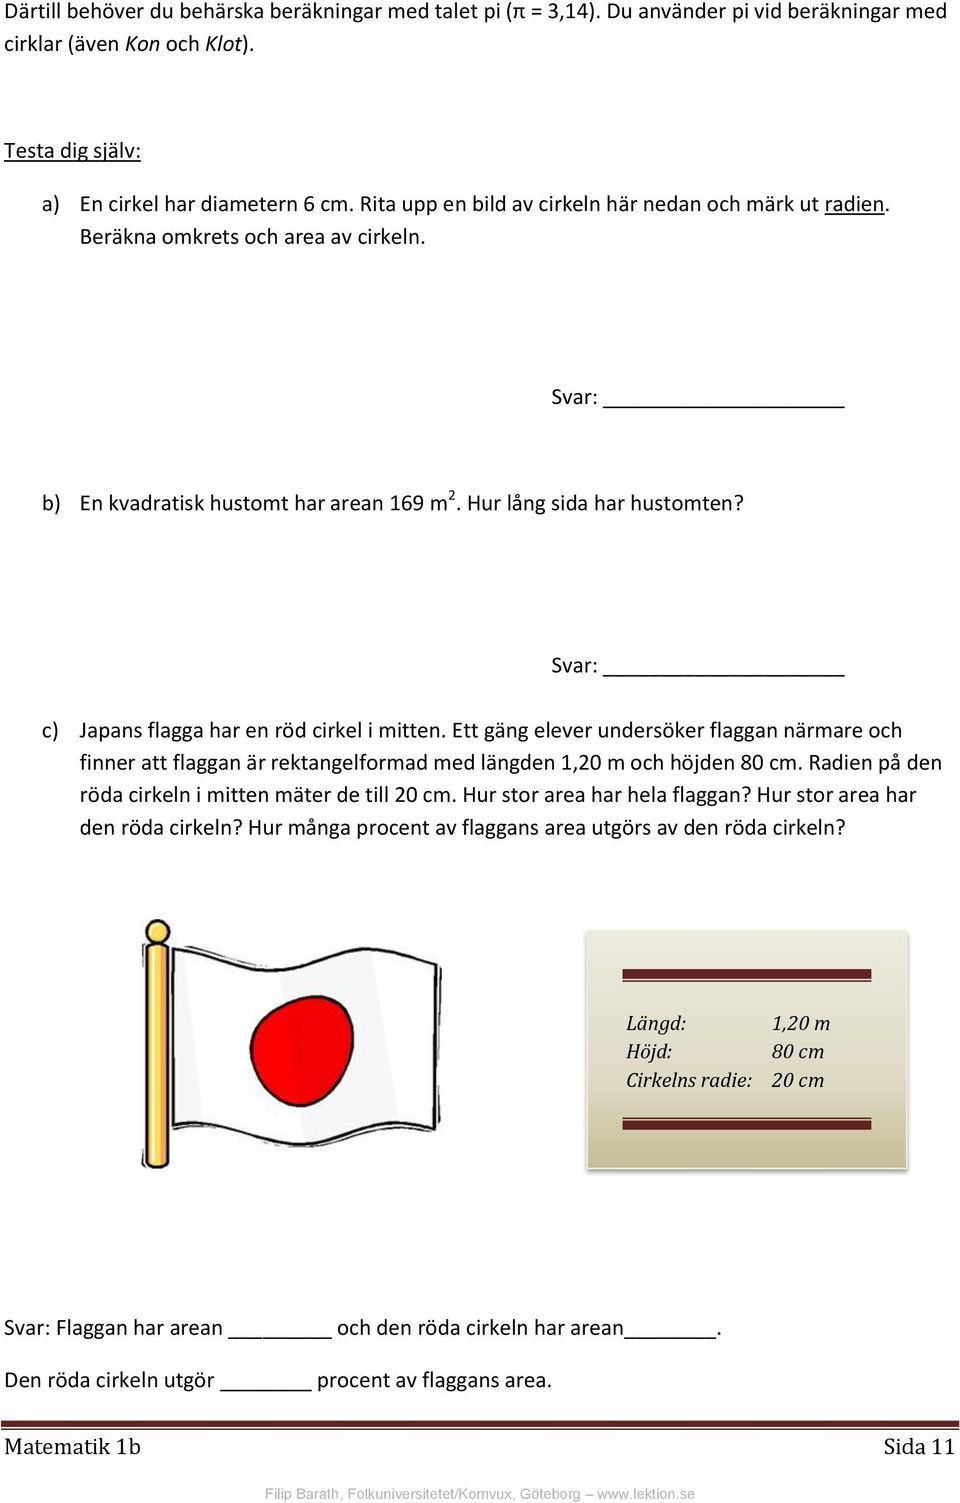 Svar: c) Japans flagga har en röd cirkel i mitten. Ett gäng elever undersöker flaggan närmare och finner att flaggan är rektangelformad med längden 1,20 m och höjden 80 cm.